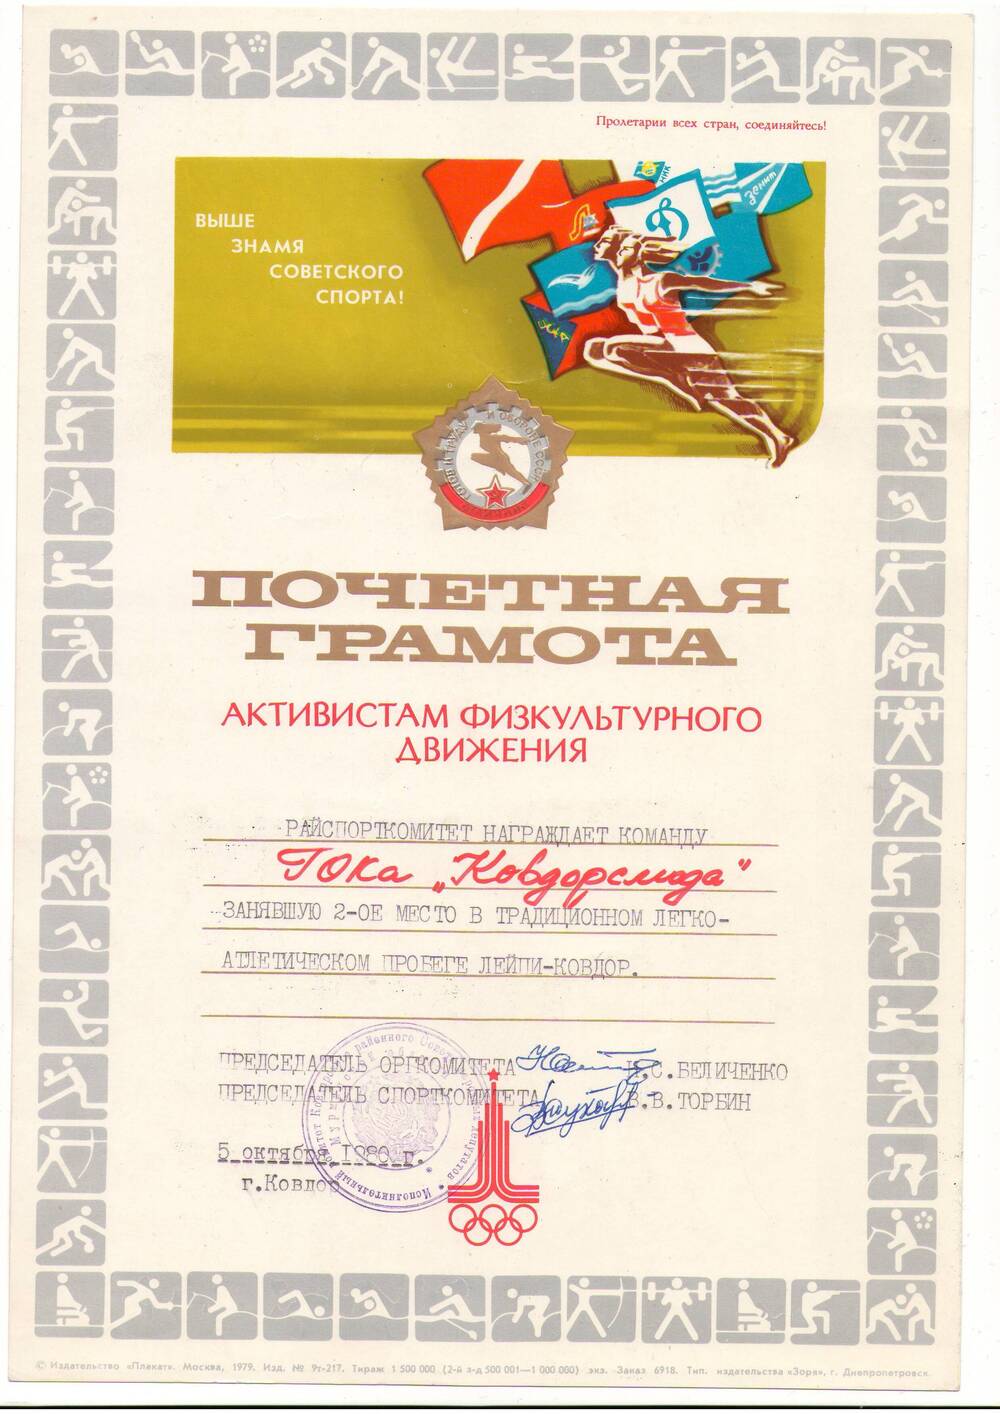 Грамота Почётная «За второе место в традиционном 
легкоатлетическом пробеге Лейпи-Ковдор» команды ГОКа «Ковдорслюда». Подписи, печать.